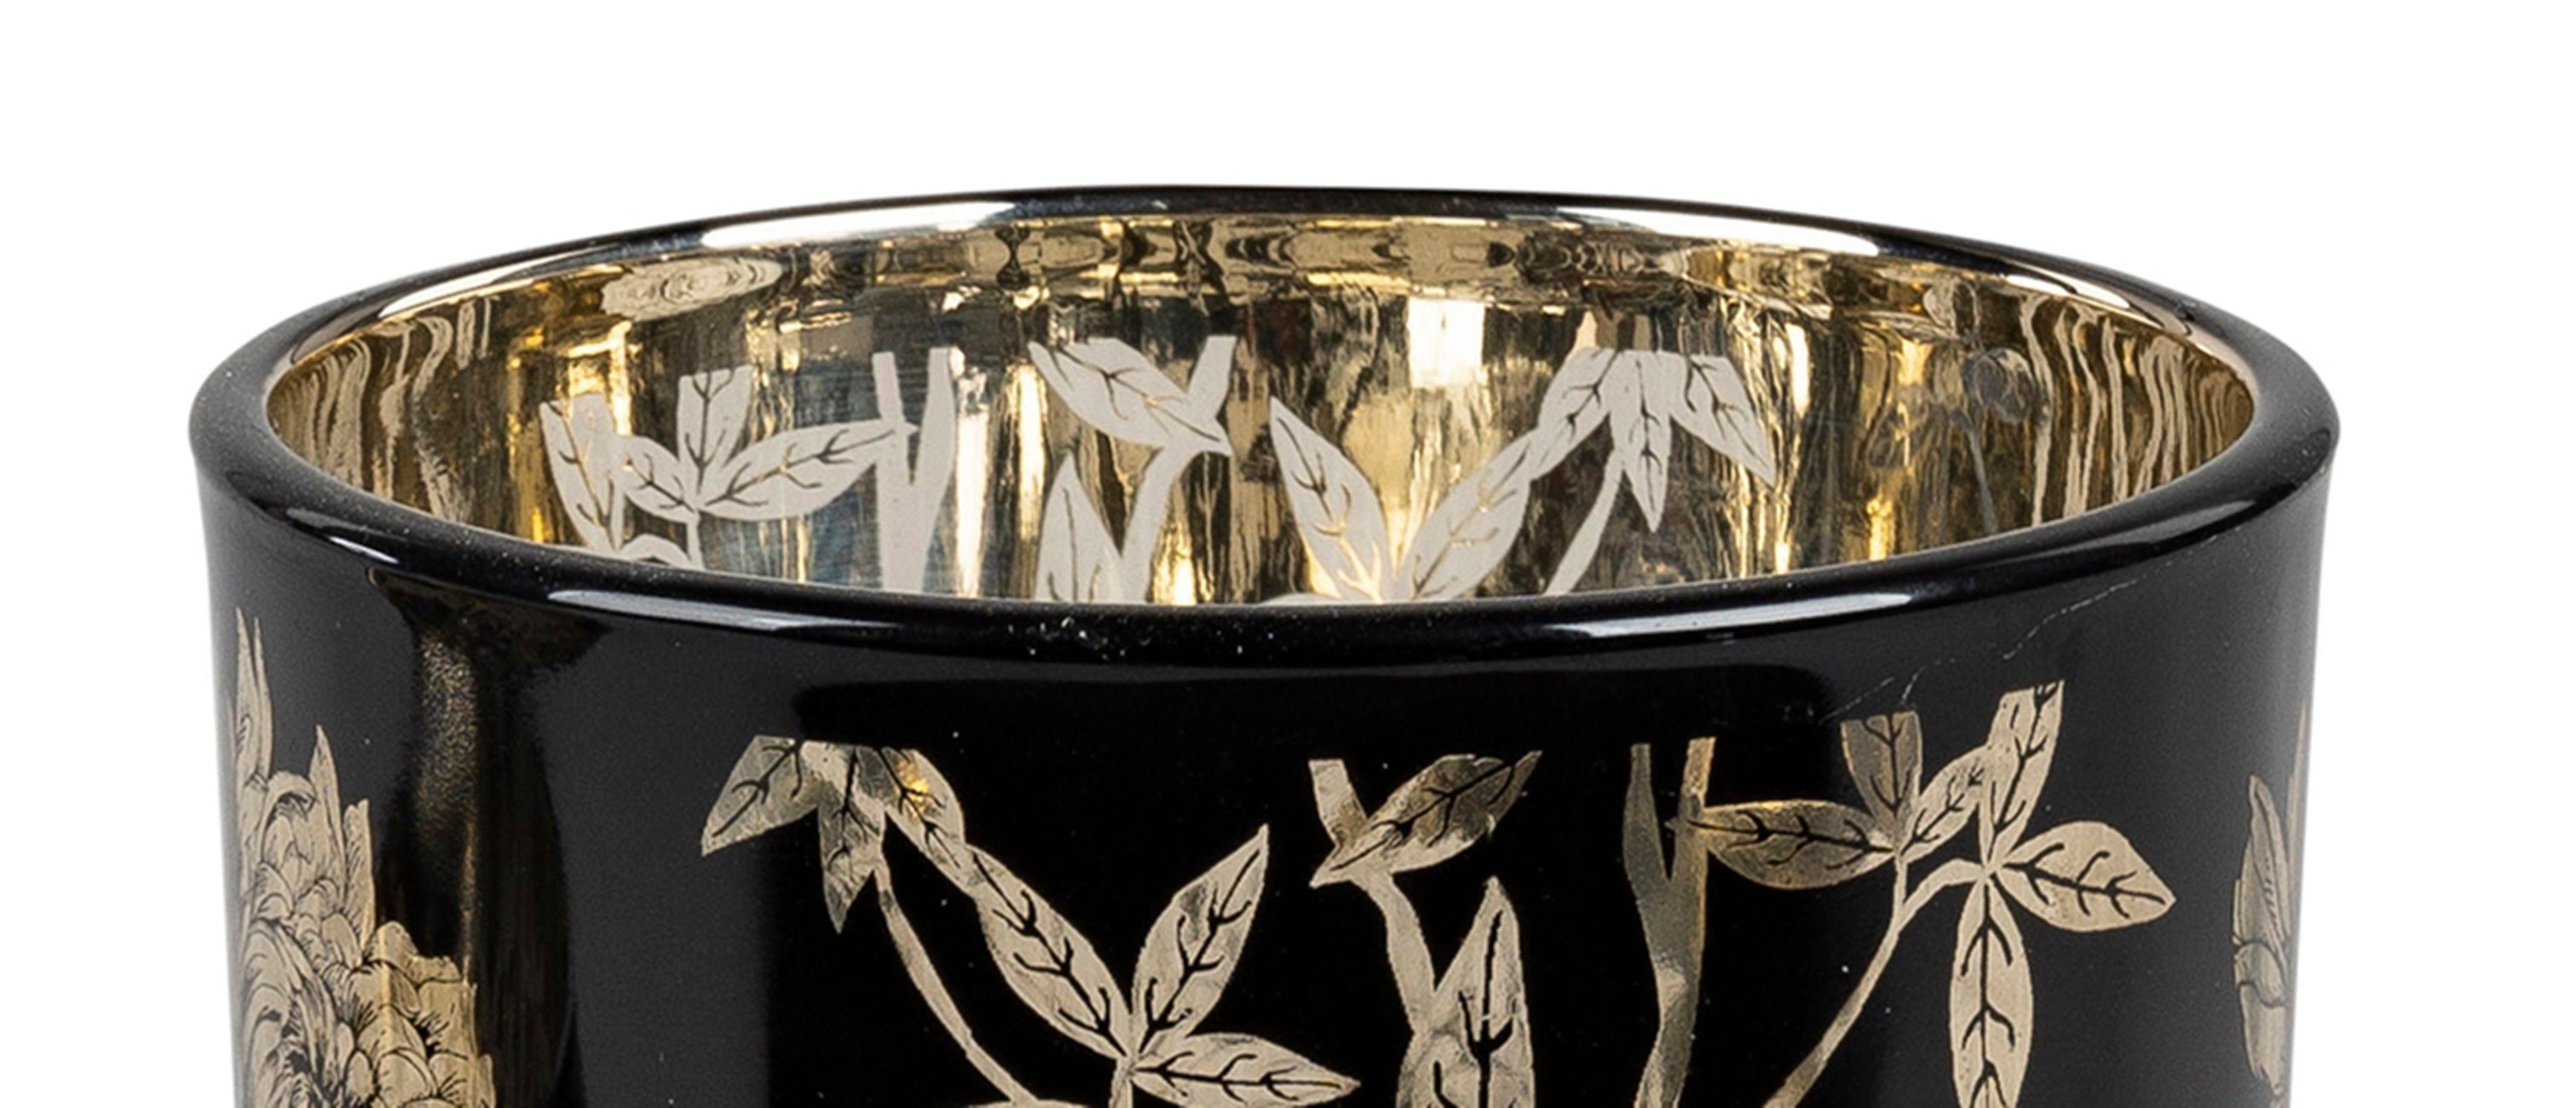 Teelichthalter Windlicht dekojohnson schwarz gold Windlichtglas 13cm